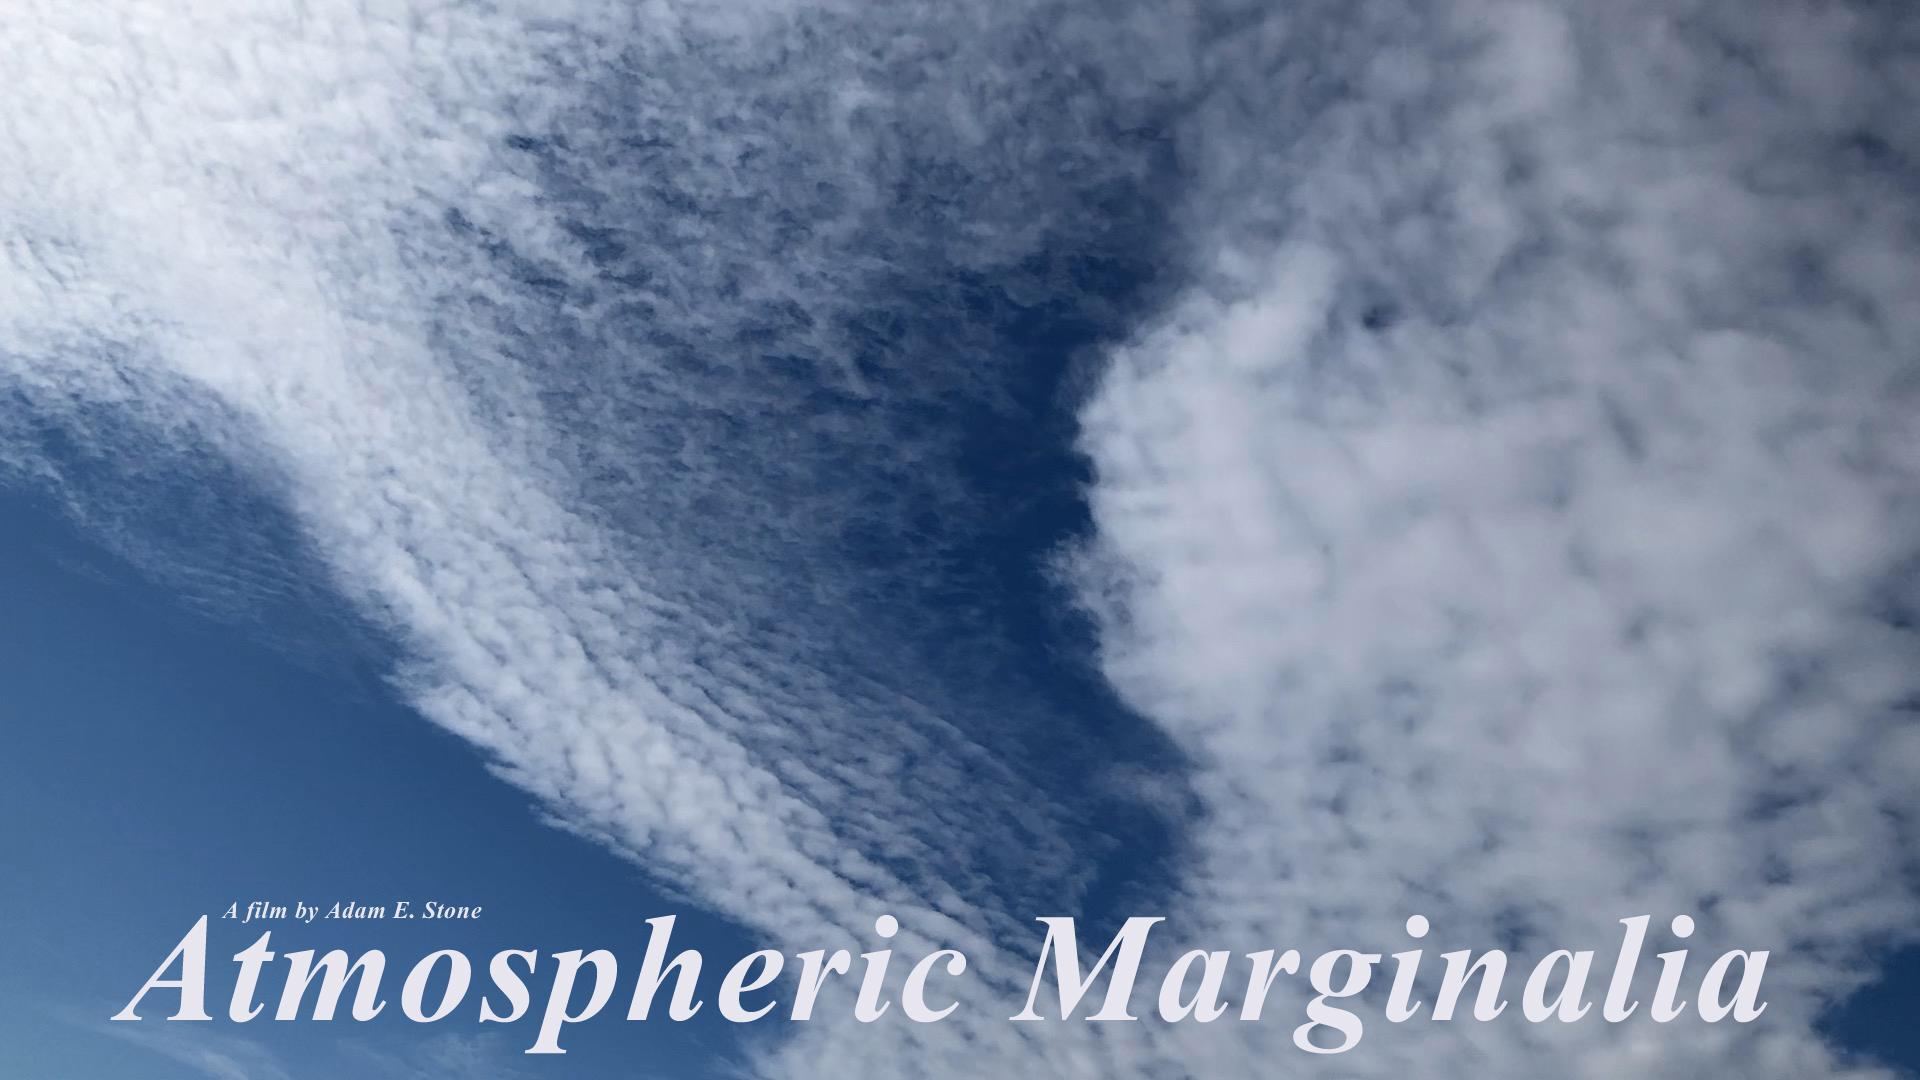 Atmospheric Marginalia